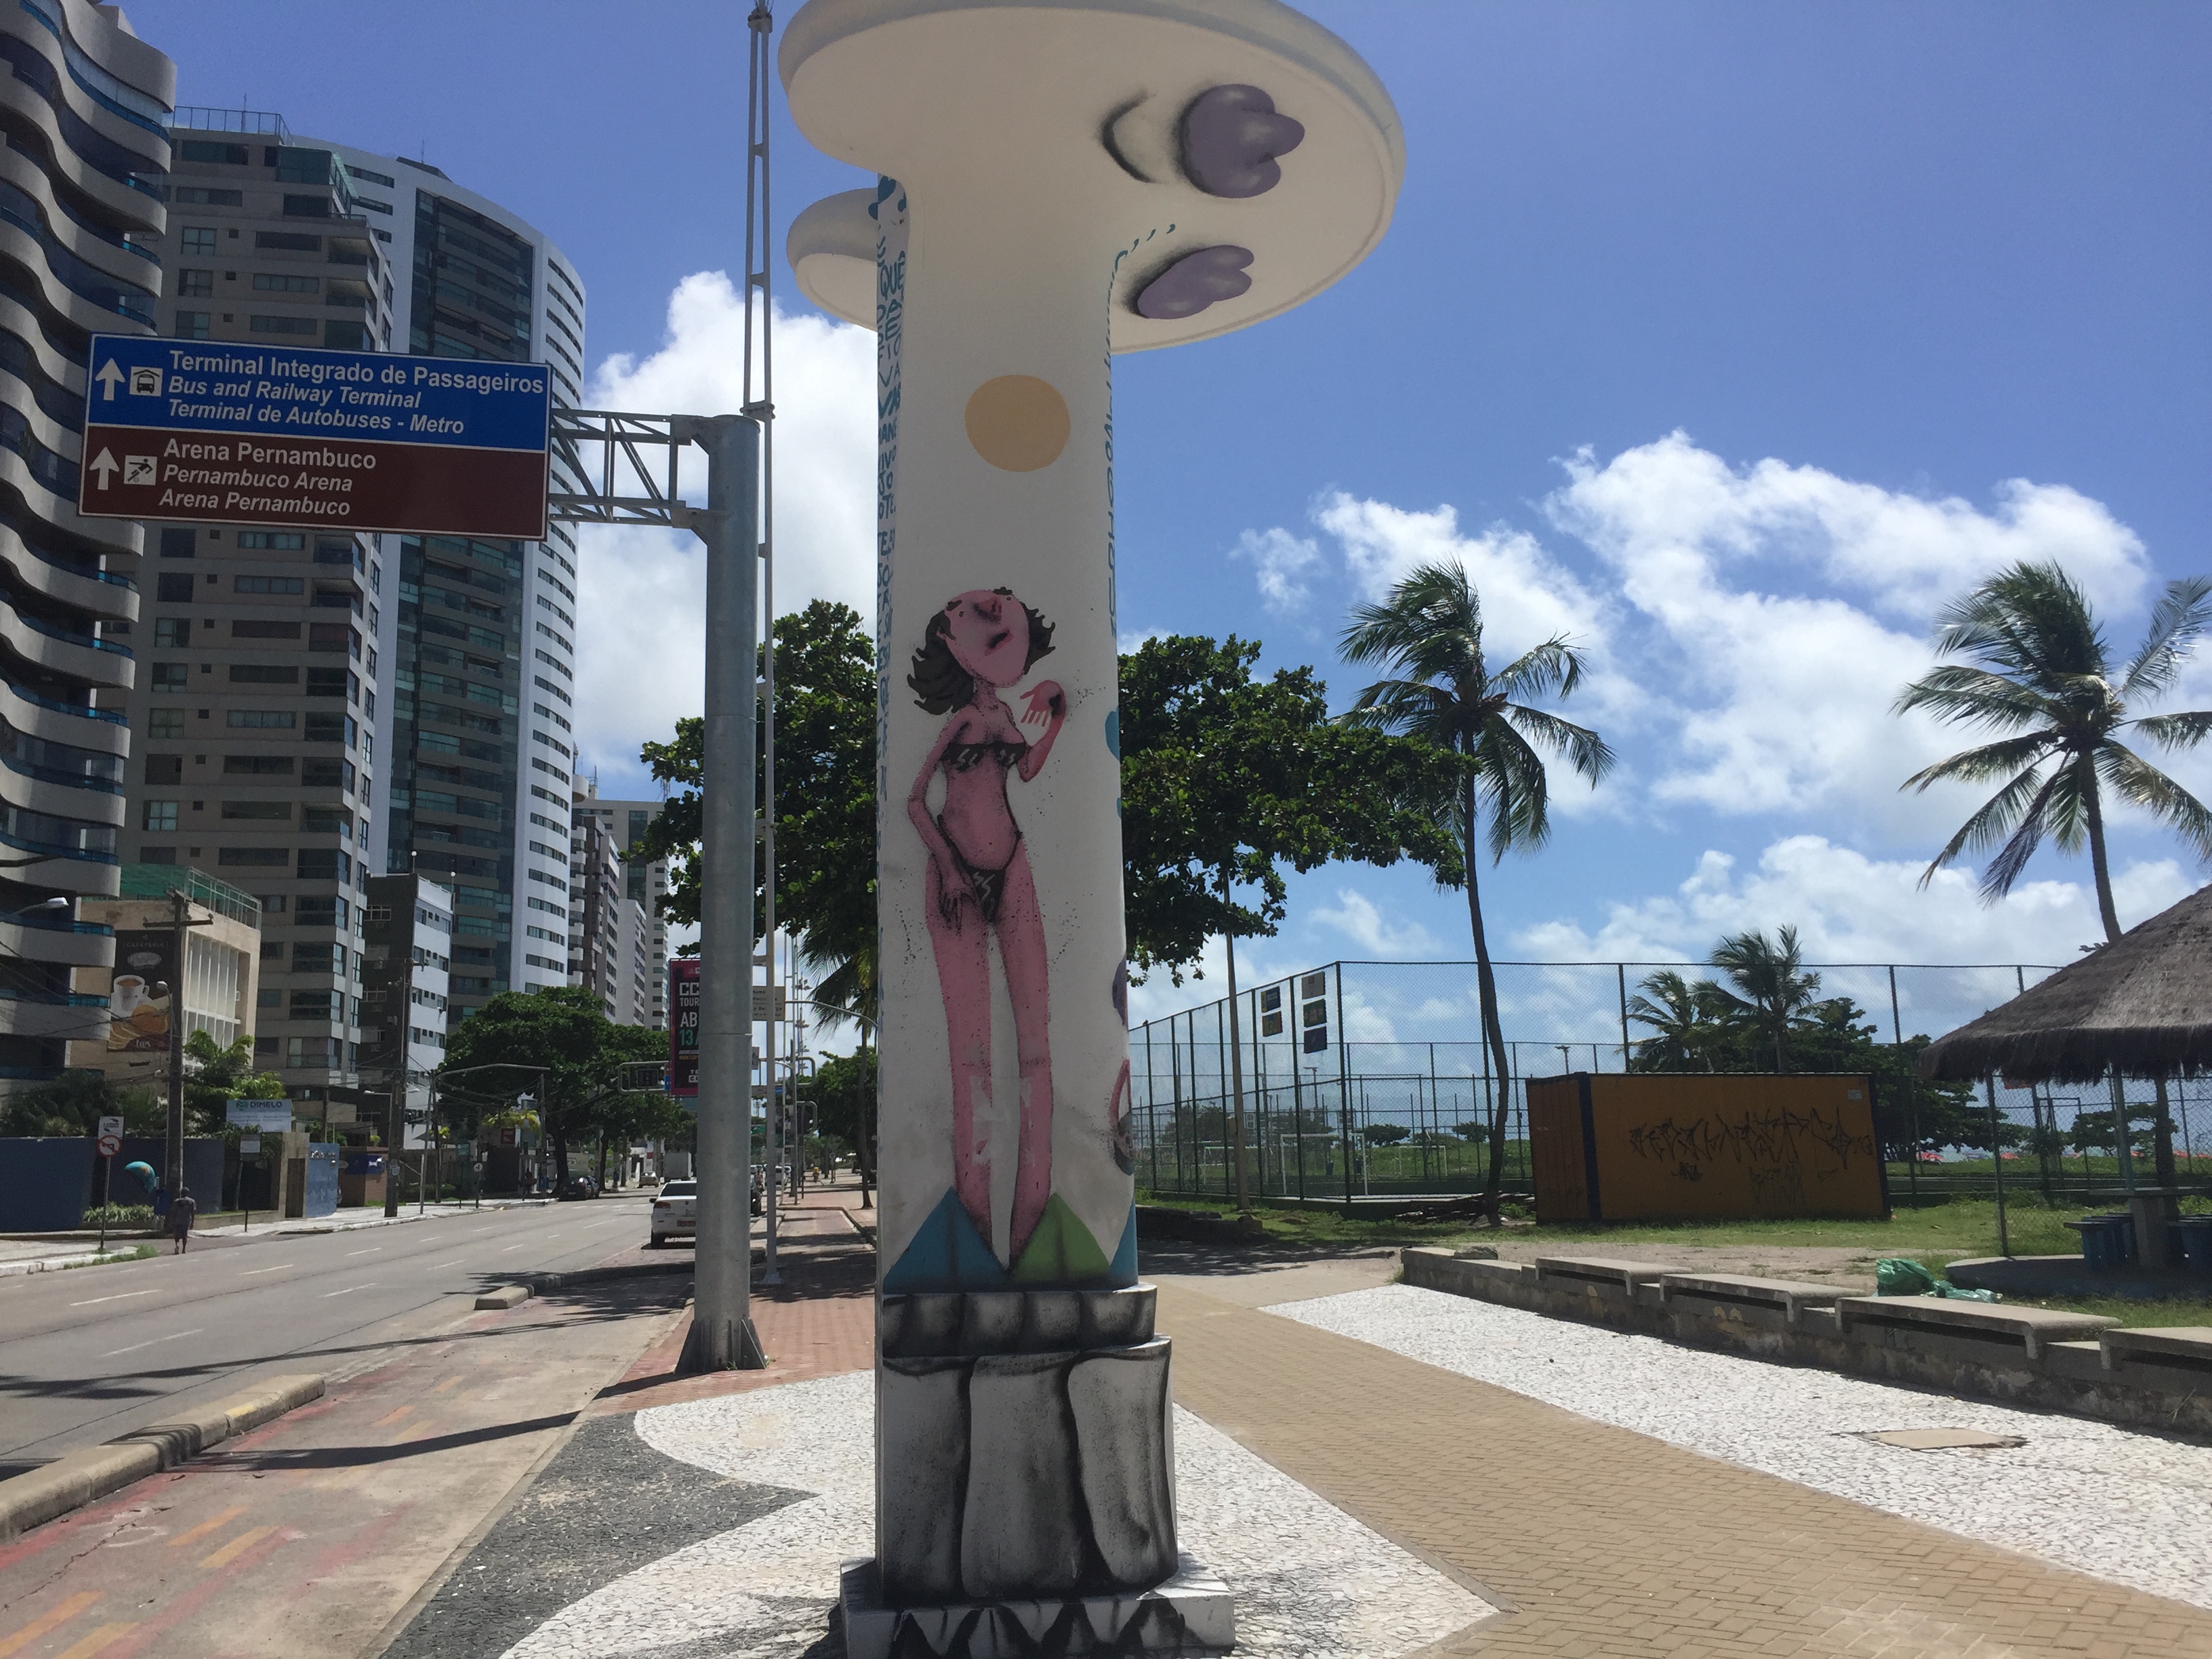 Seis coisas interessantes brechadas em Recife